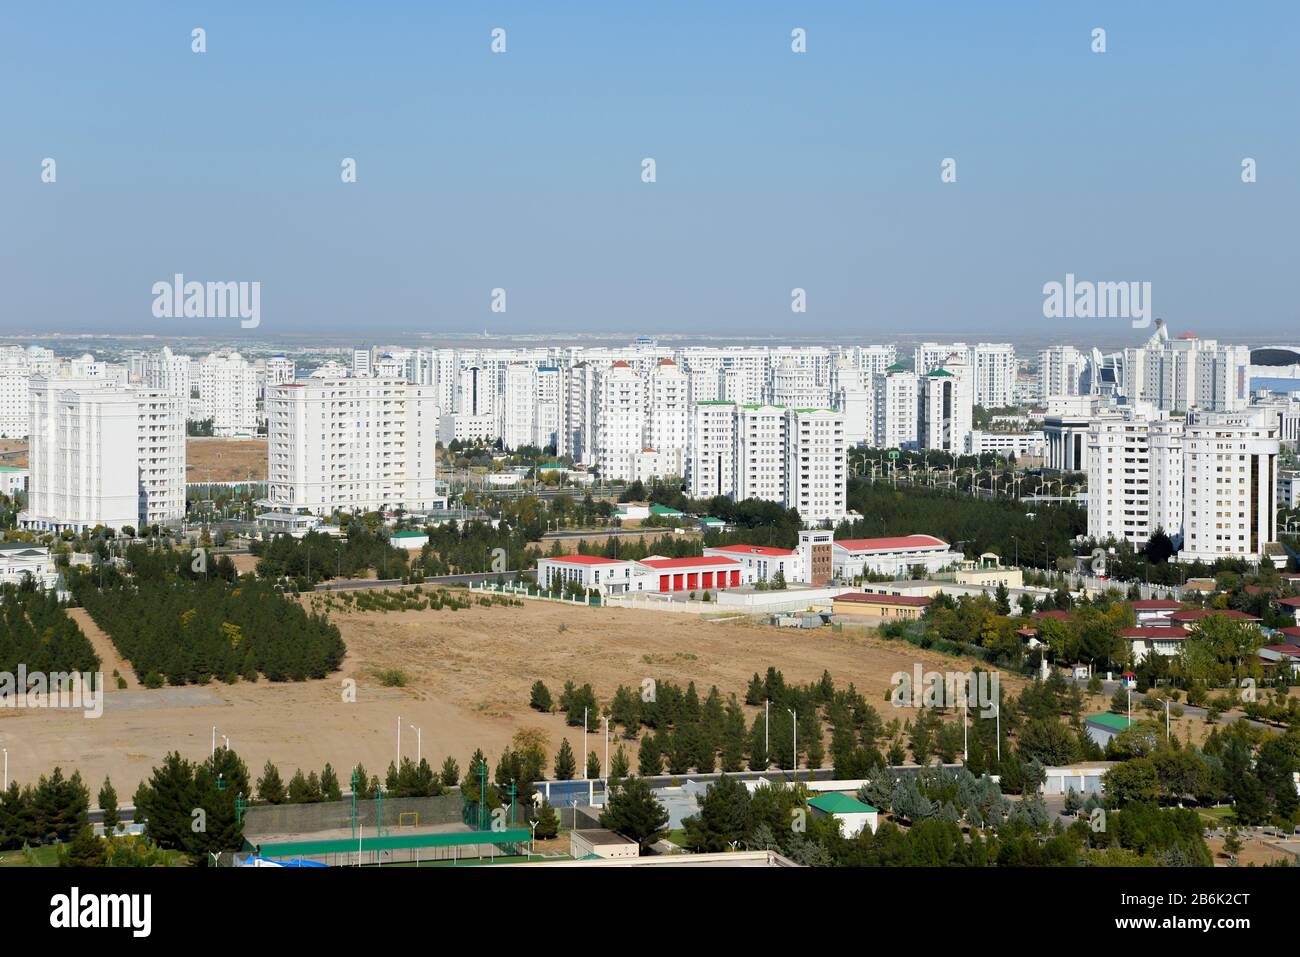 Skyline di edifici in marmo bianco ad Ashgabat, la capitale del Turkmenistan nell'Asia centrale. Edifici residenziali di lusso, conosciuta anche come la città bianca. Foto Stock